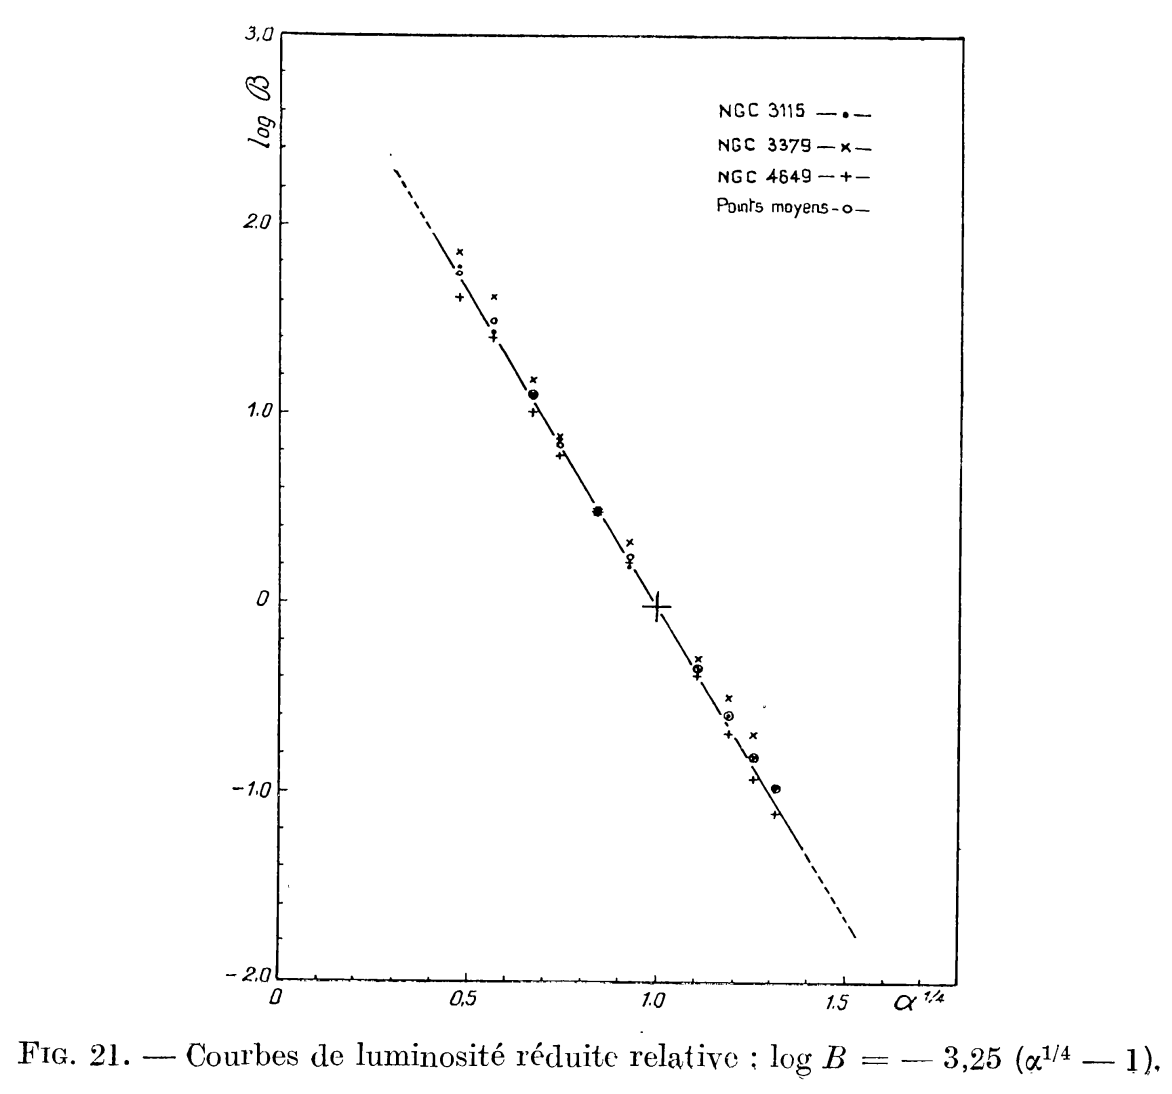 Figure 21 from de Vaucouleurs (1946): surface brightness vs. R^{1/4} for a few elliptical galaxies